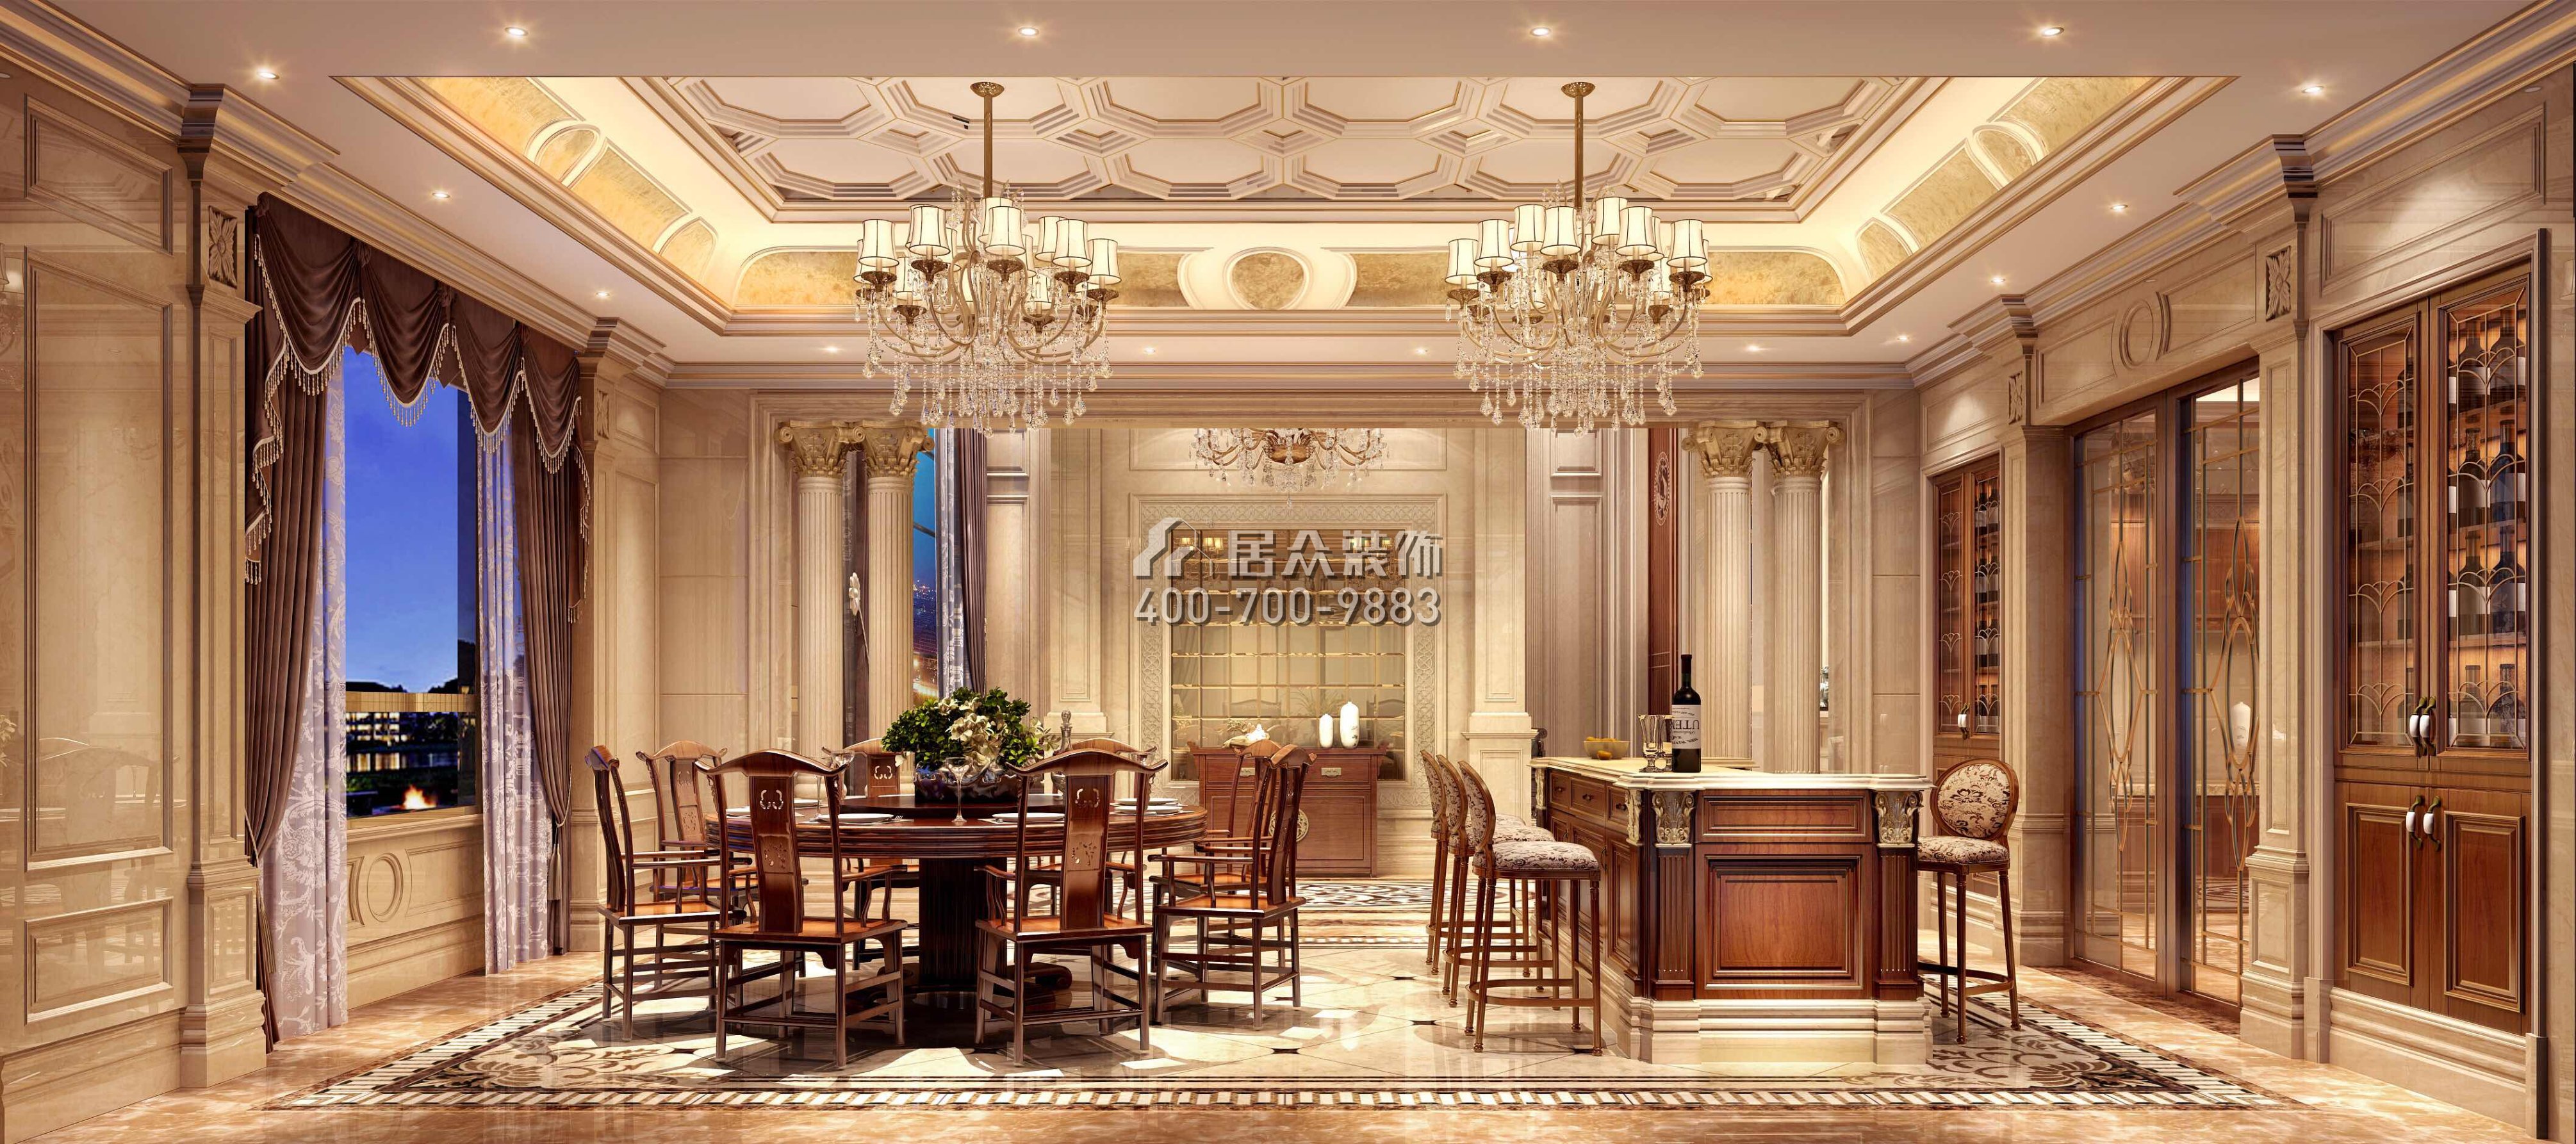 东江明珠花园800平方米欧式风格别墅户型餐厅装修效果图